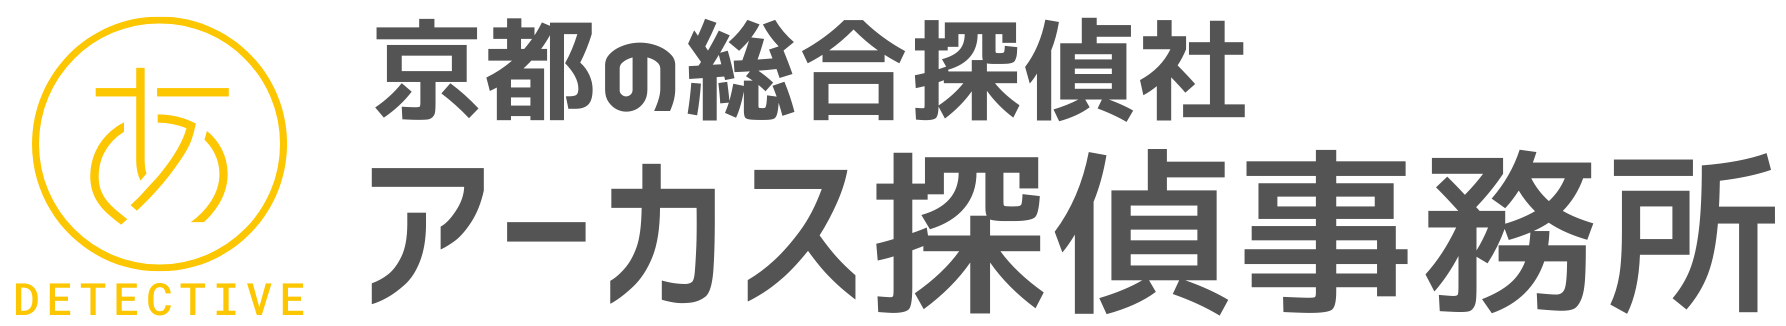 京都の探偵・興信所【浮気調査/人探しに強い】探偵社アーカス